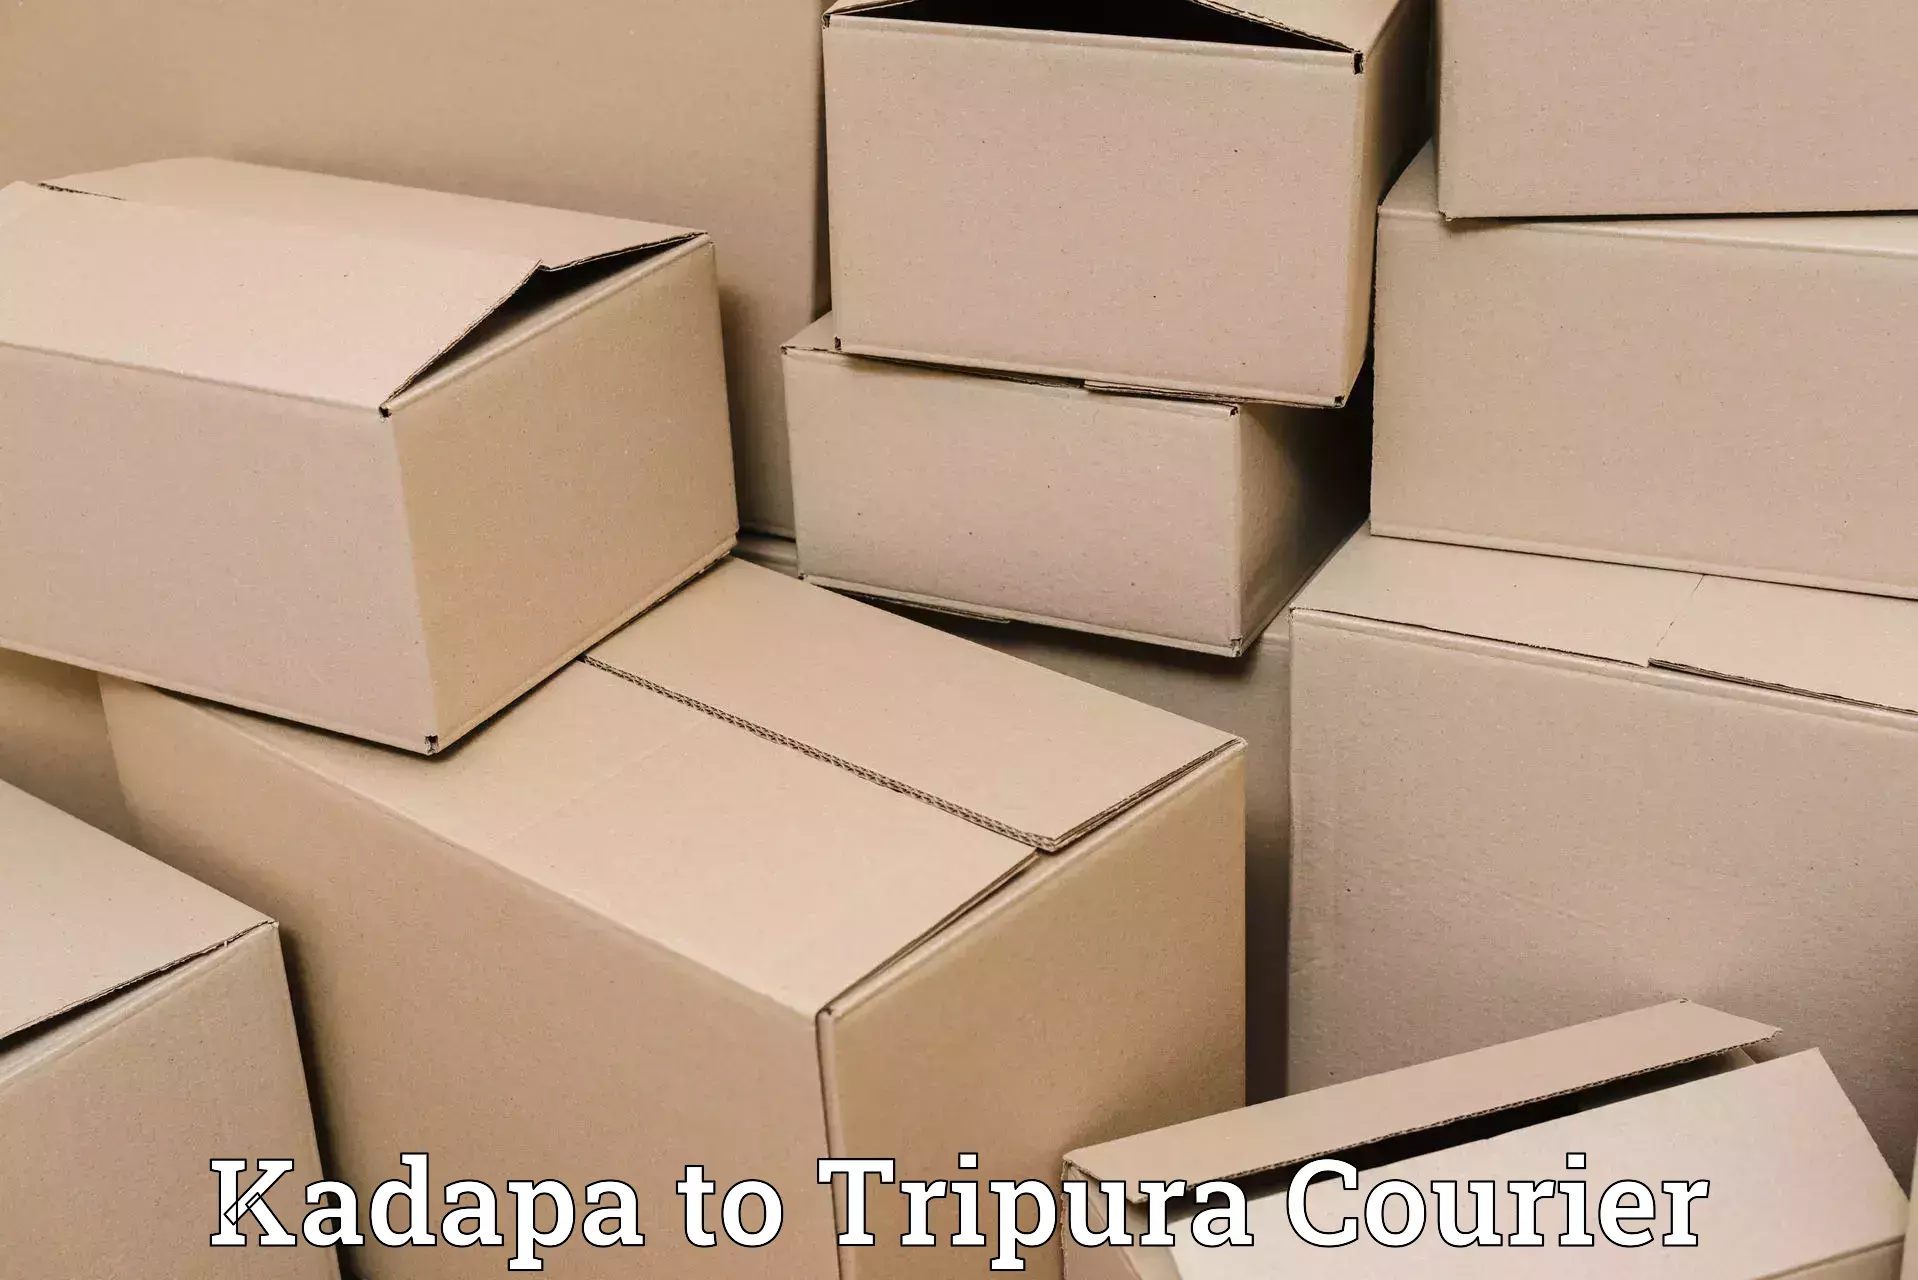 Seamless shipping service Kadapa to Bishalgarh